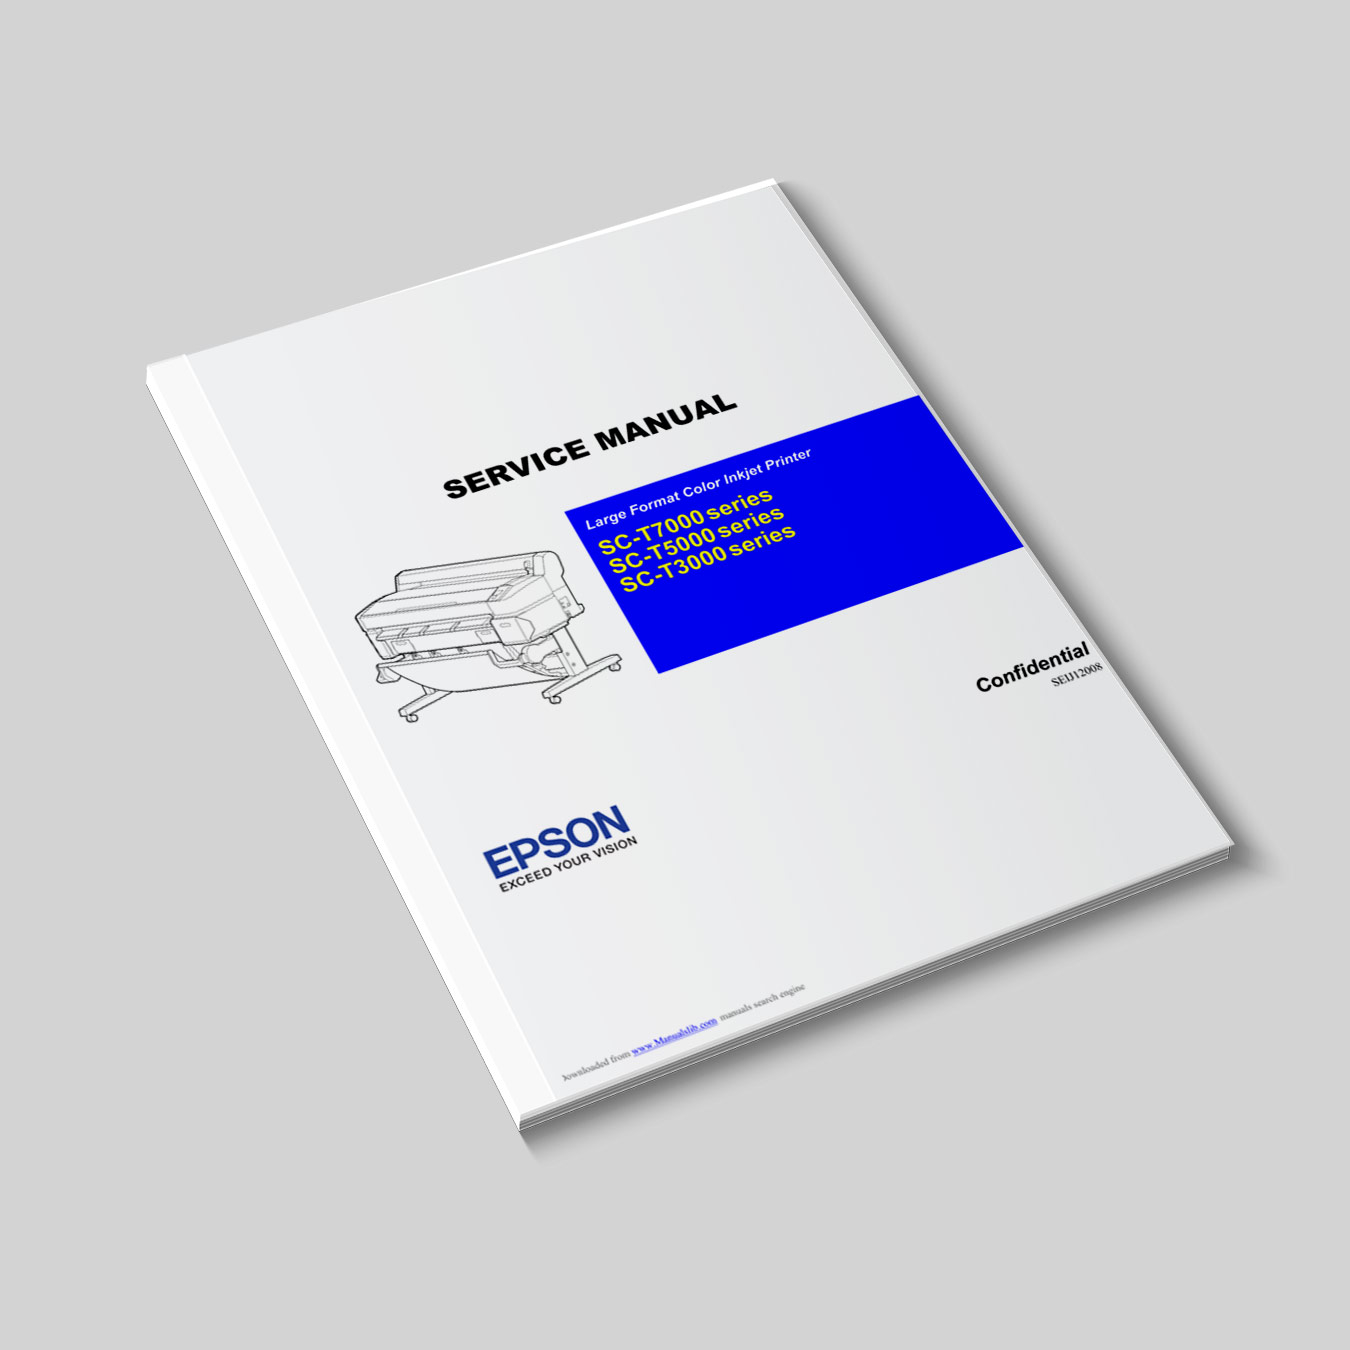 Service Manual / Manual de Serviço - Epson SC-T3000, SC-T5000, SC-T7000 series